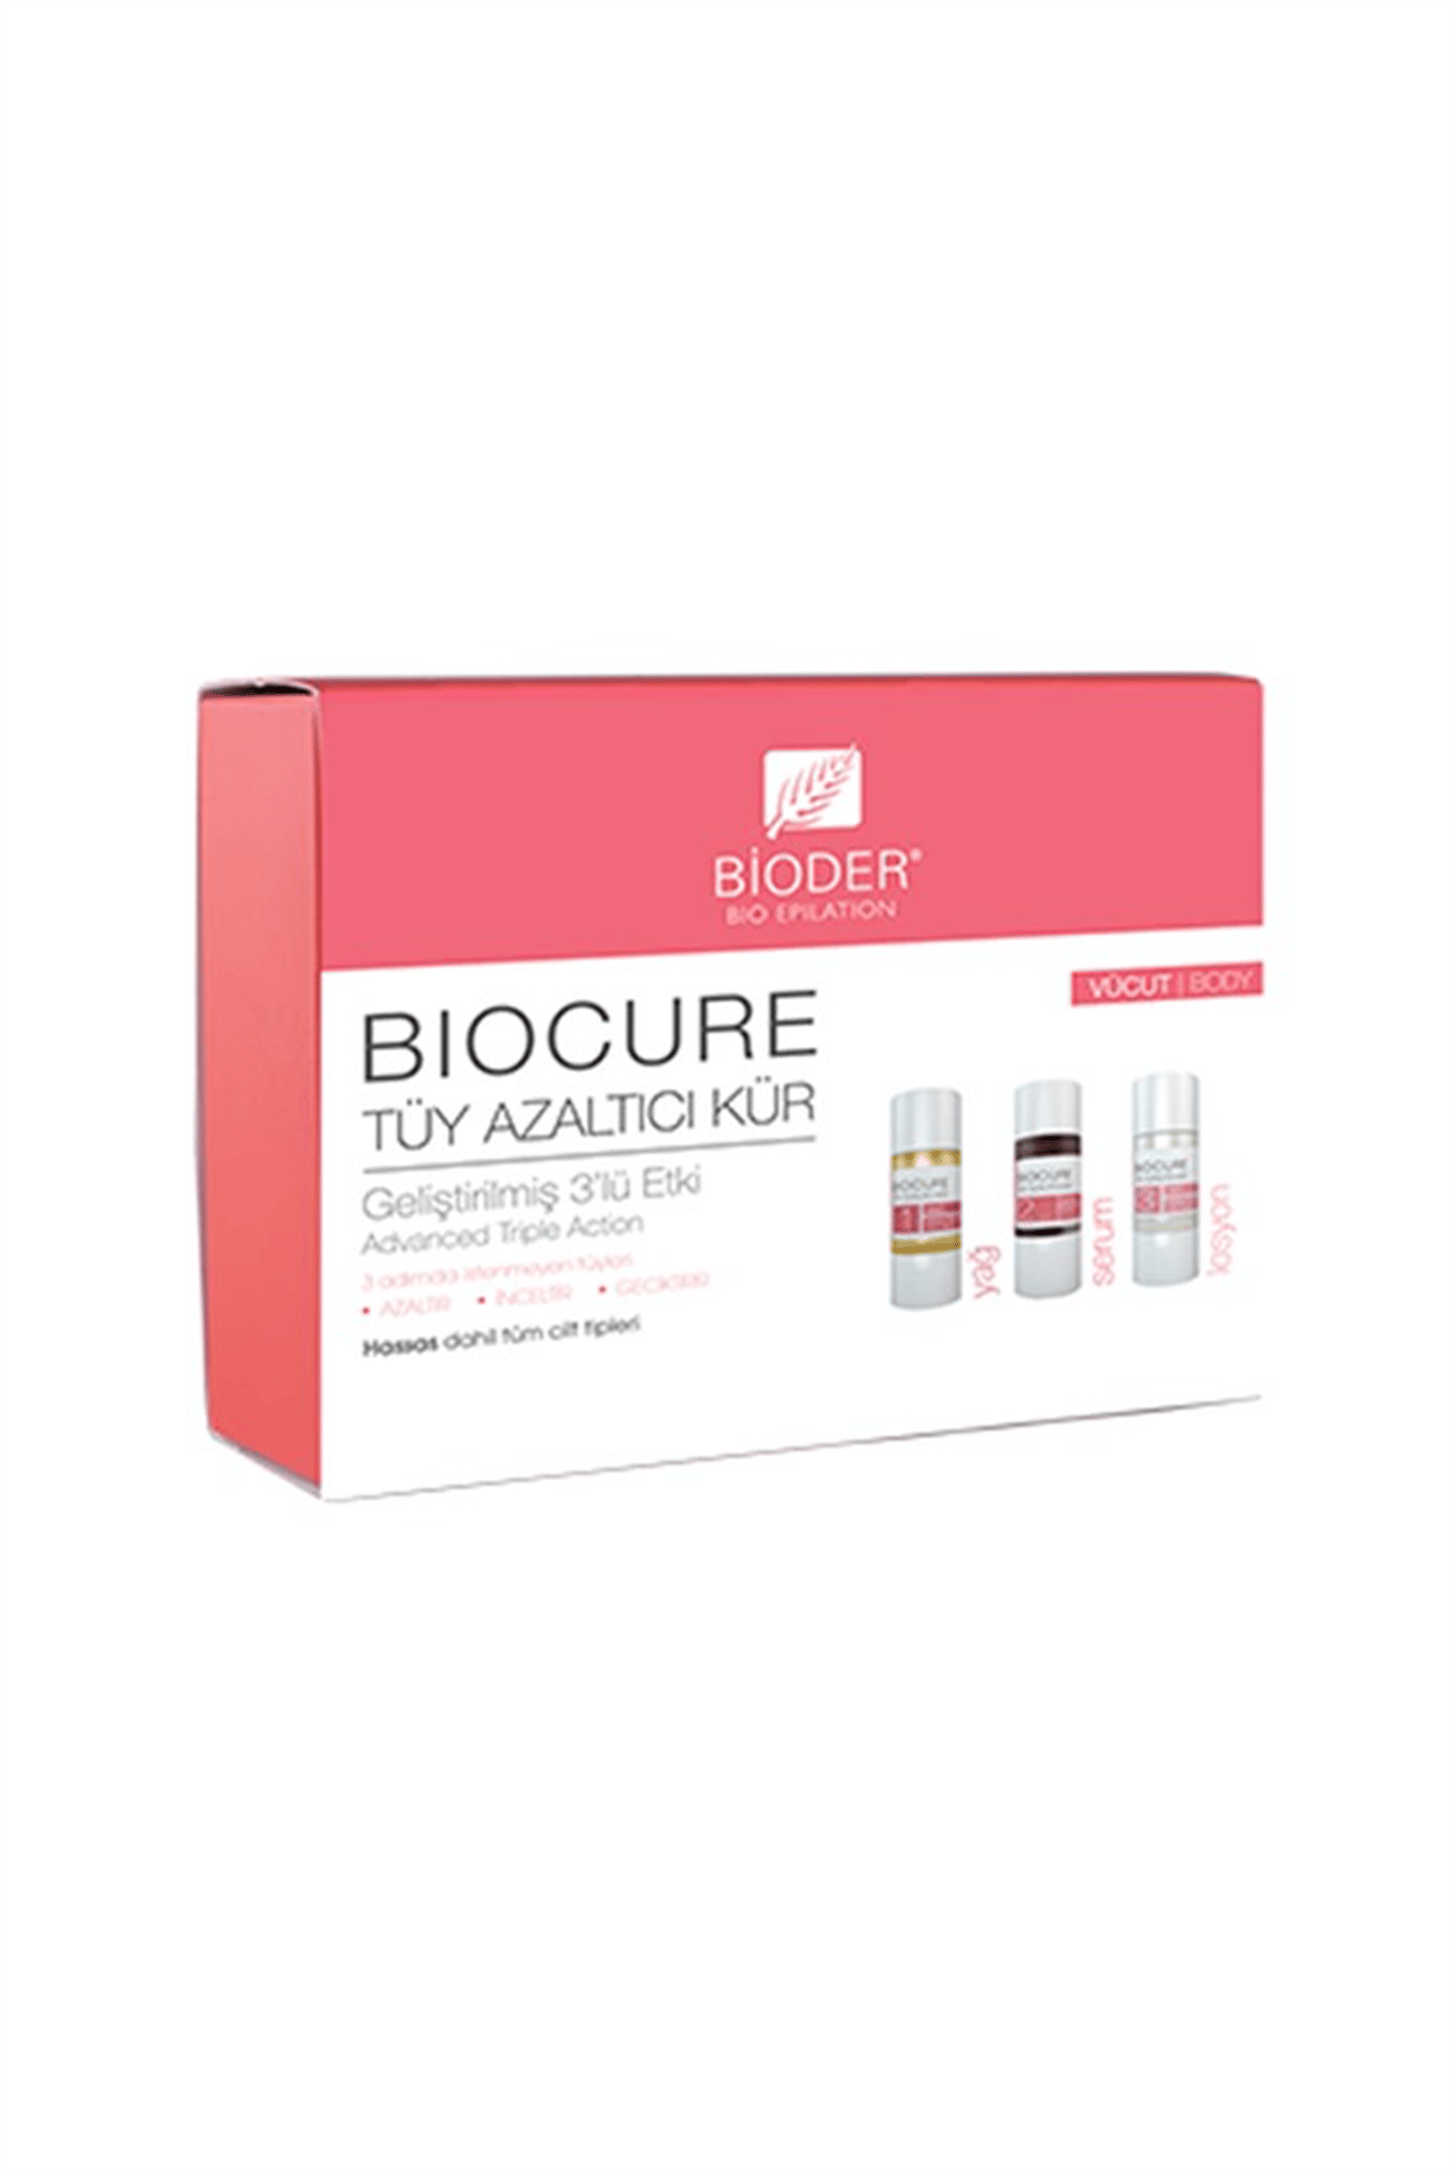 Bioder Biocure Tüy Azaltıcı Kür 3 x 10 ml - Vücut Bölgesi | EczanemveBen.com